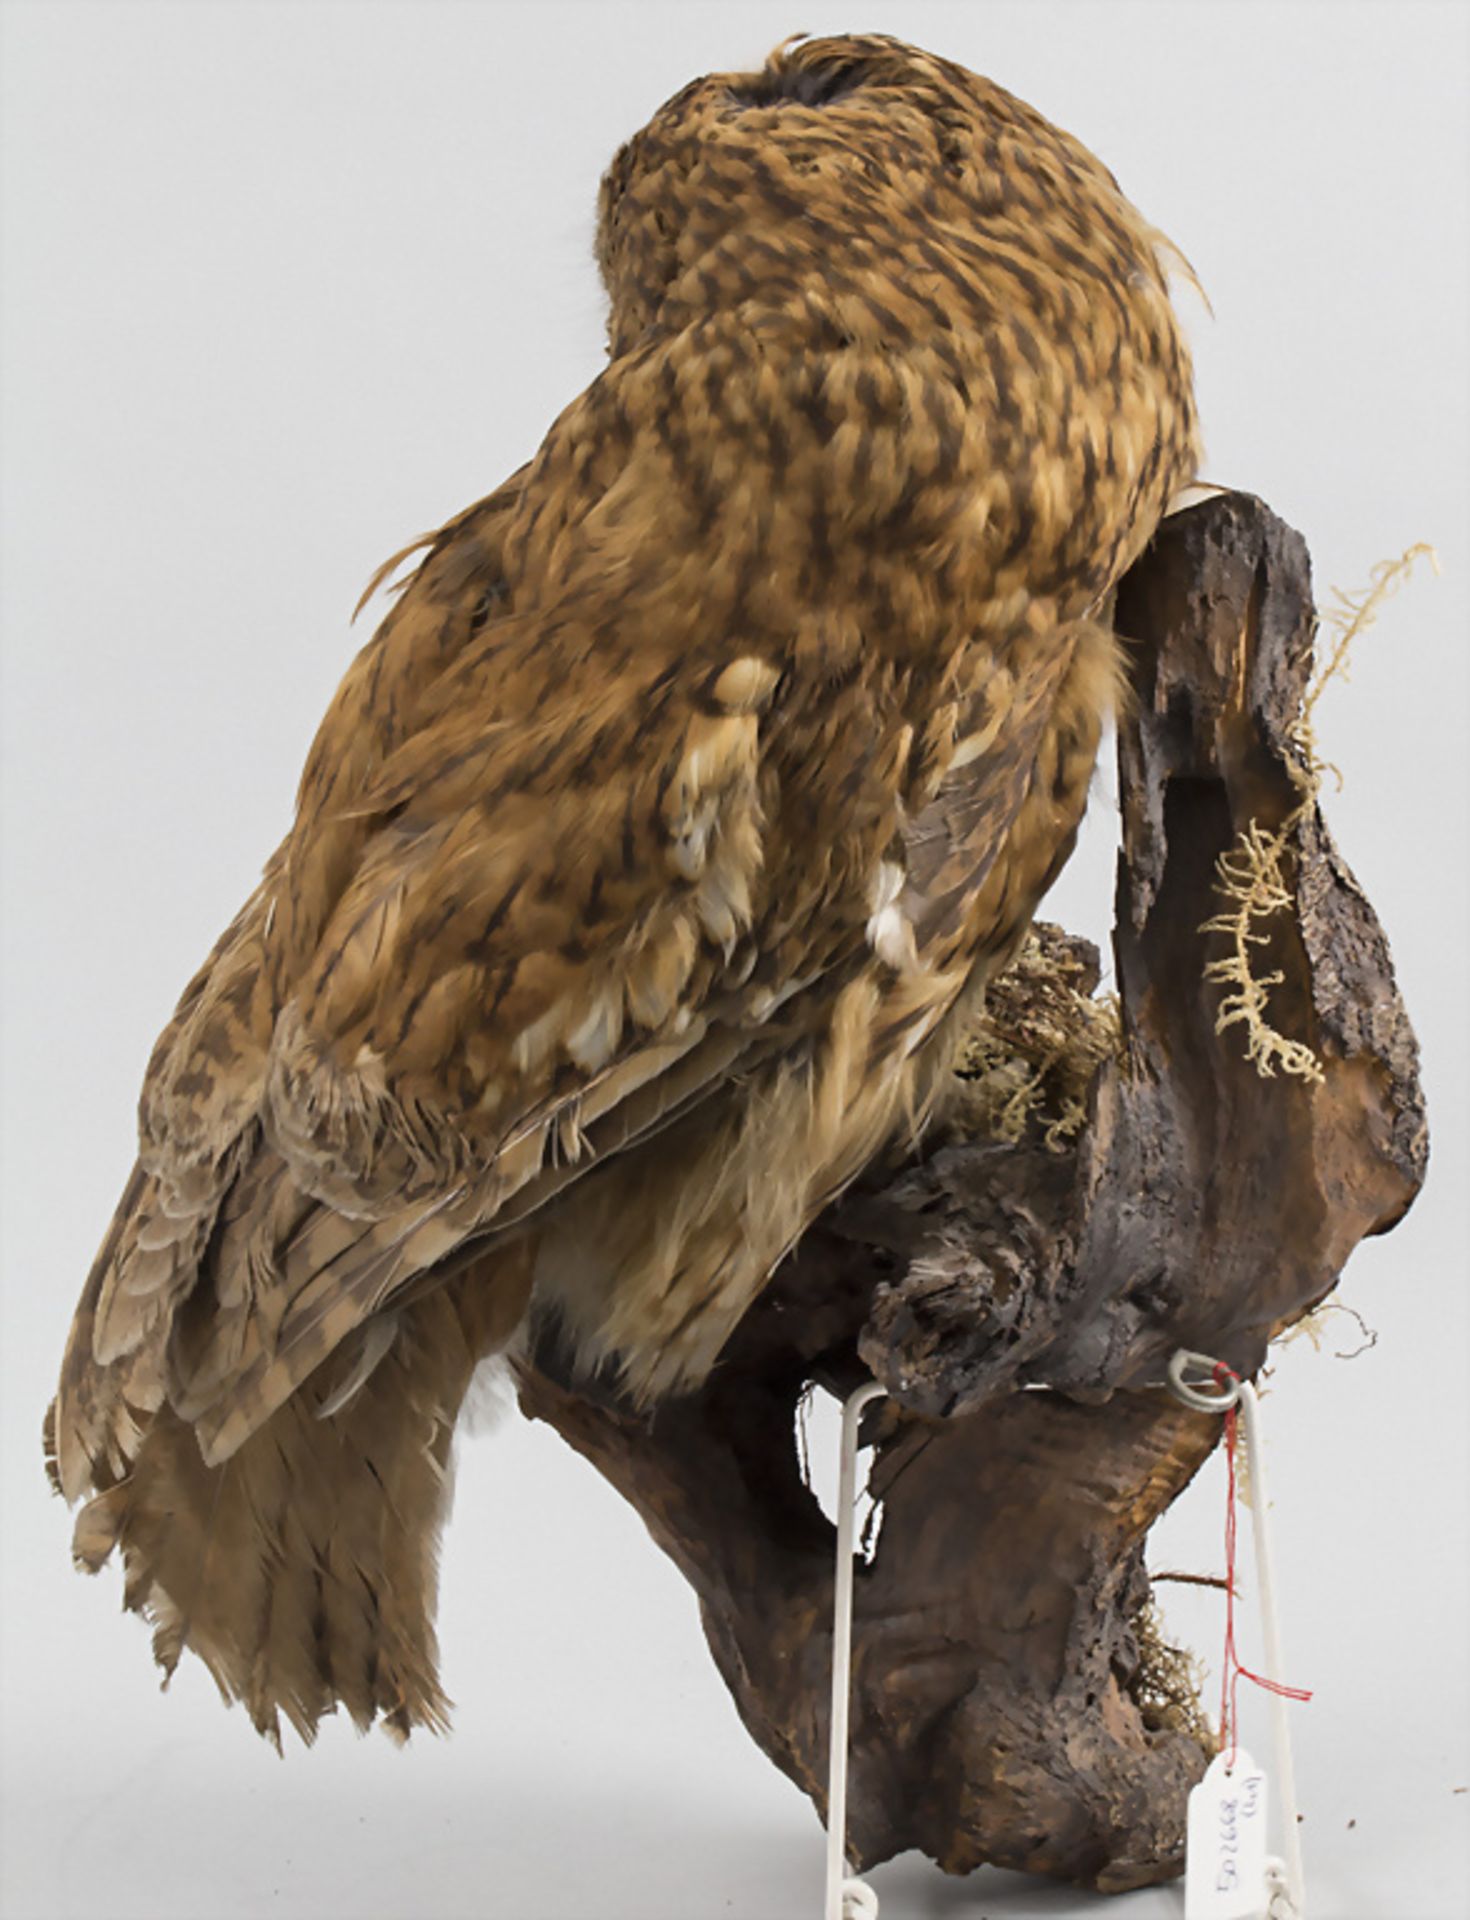 Tierpräparat 'Waldkauz' / An animal preparation 'Tawny owl' - Bild 3 aus 3